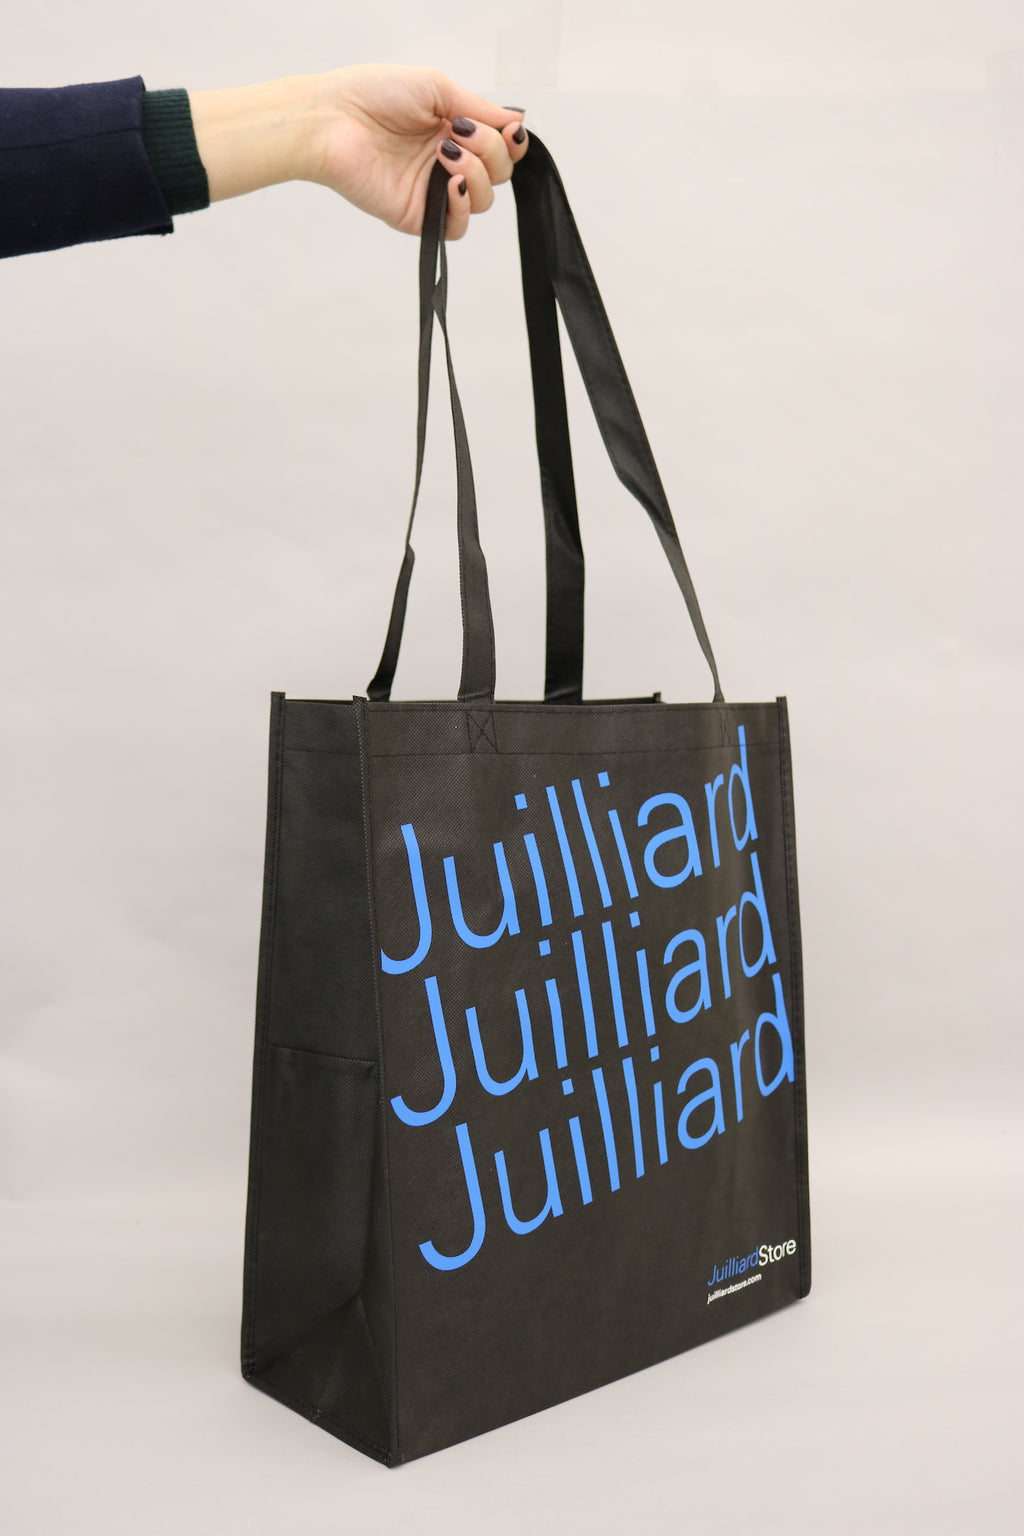 Juilliard Store